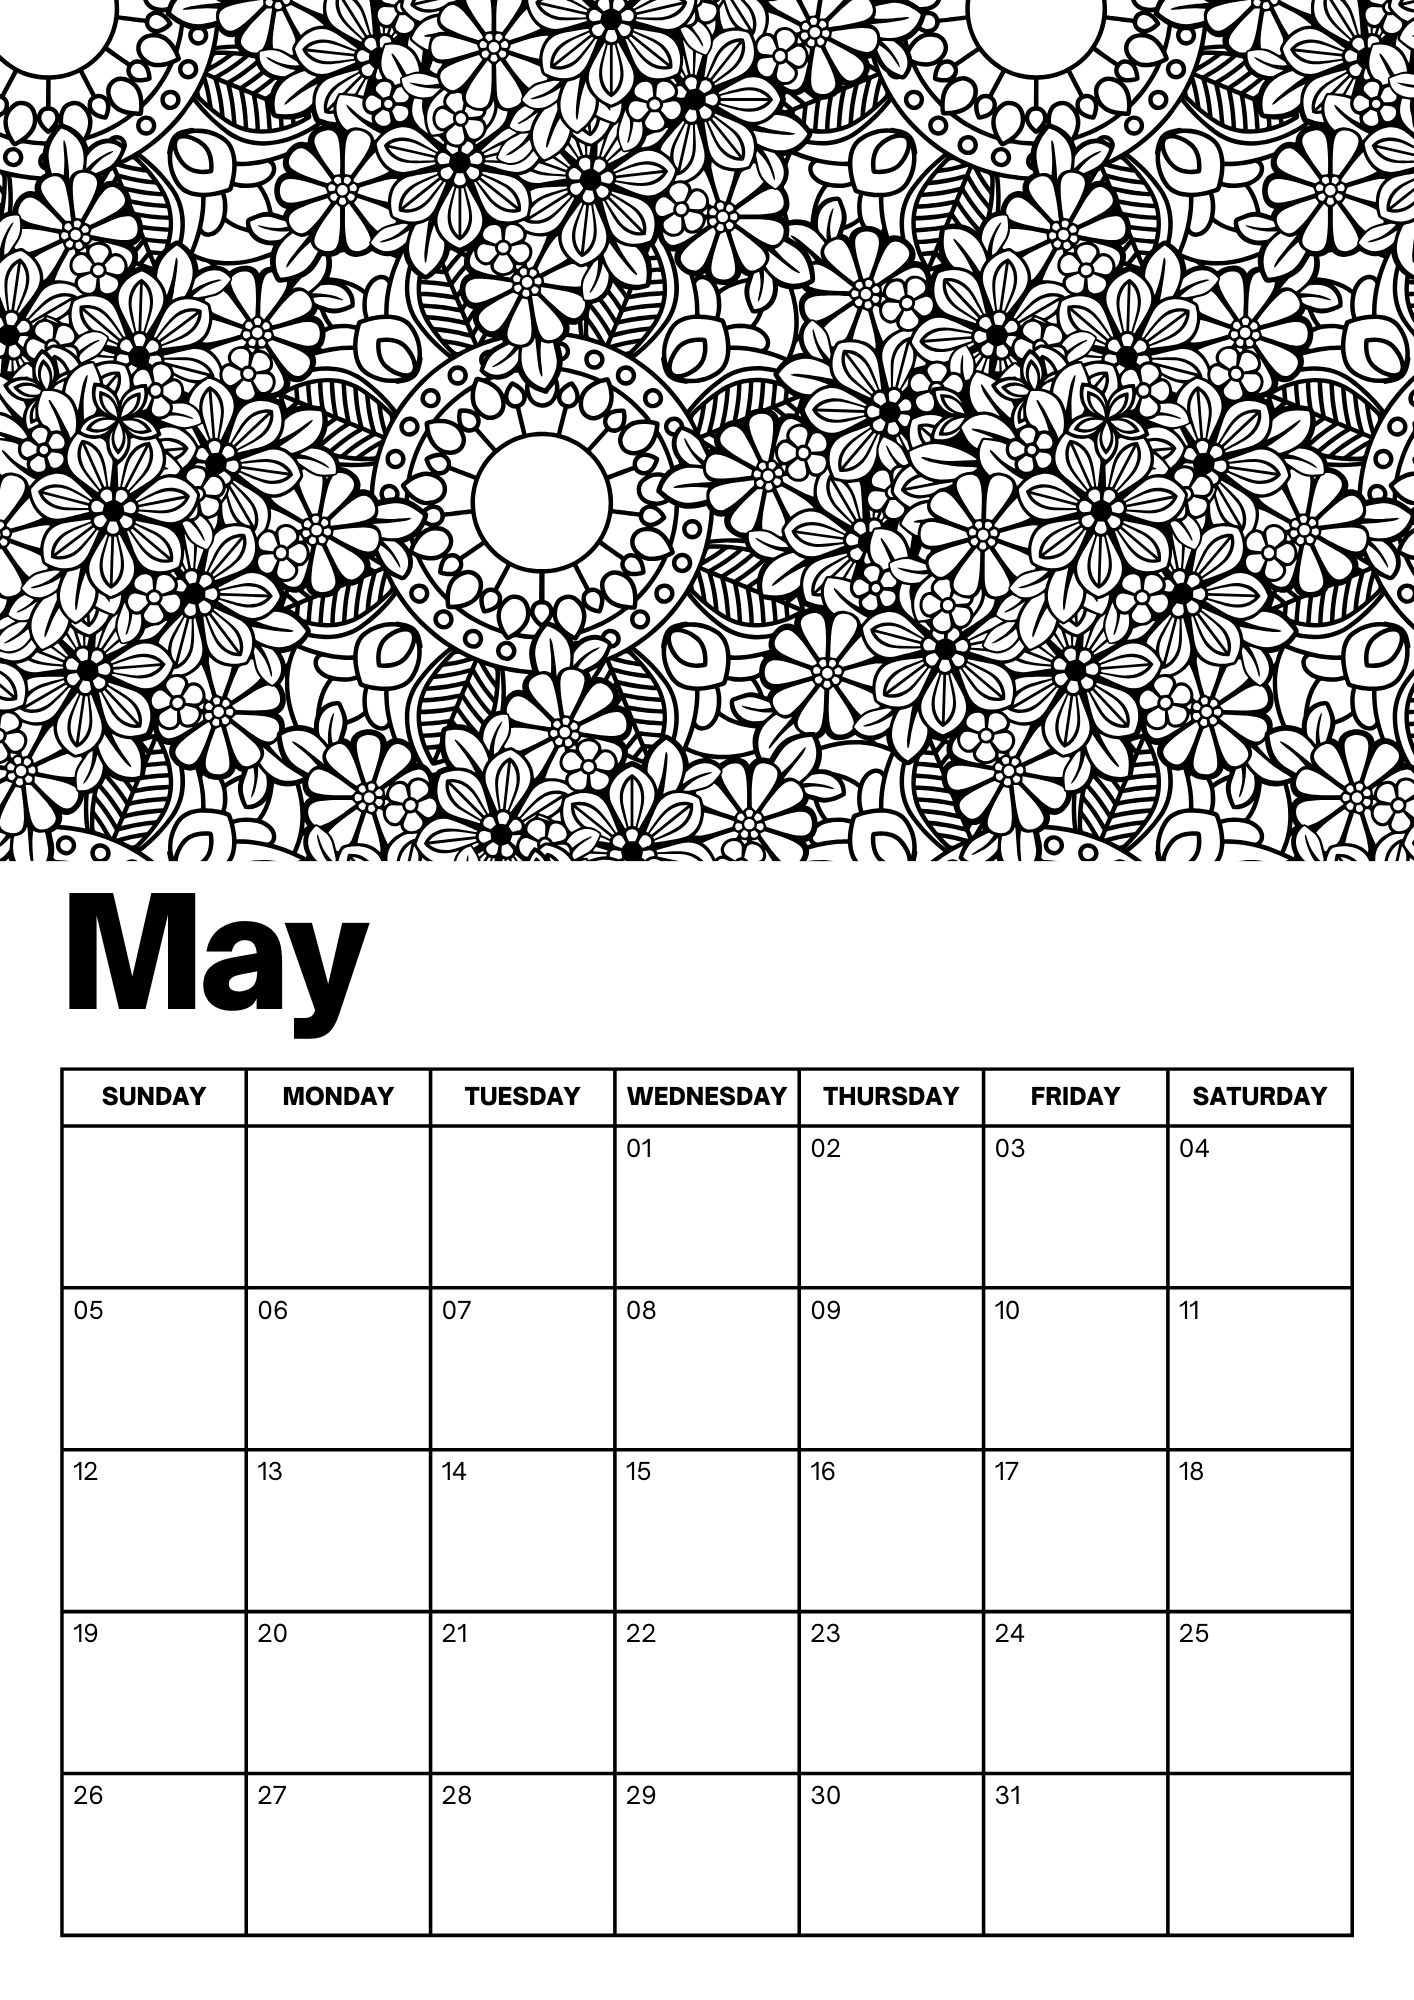 May Calendars - 100% FREE PRINTABLES